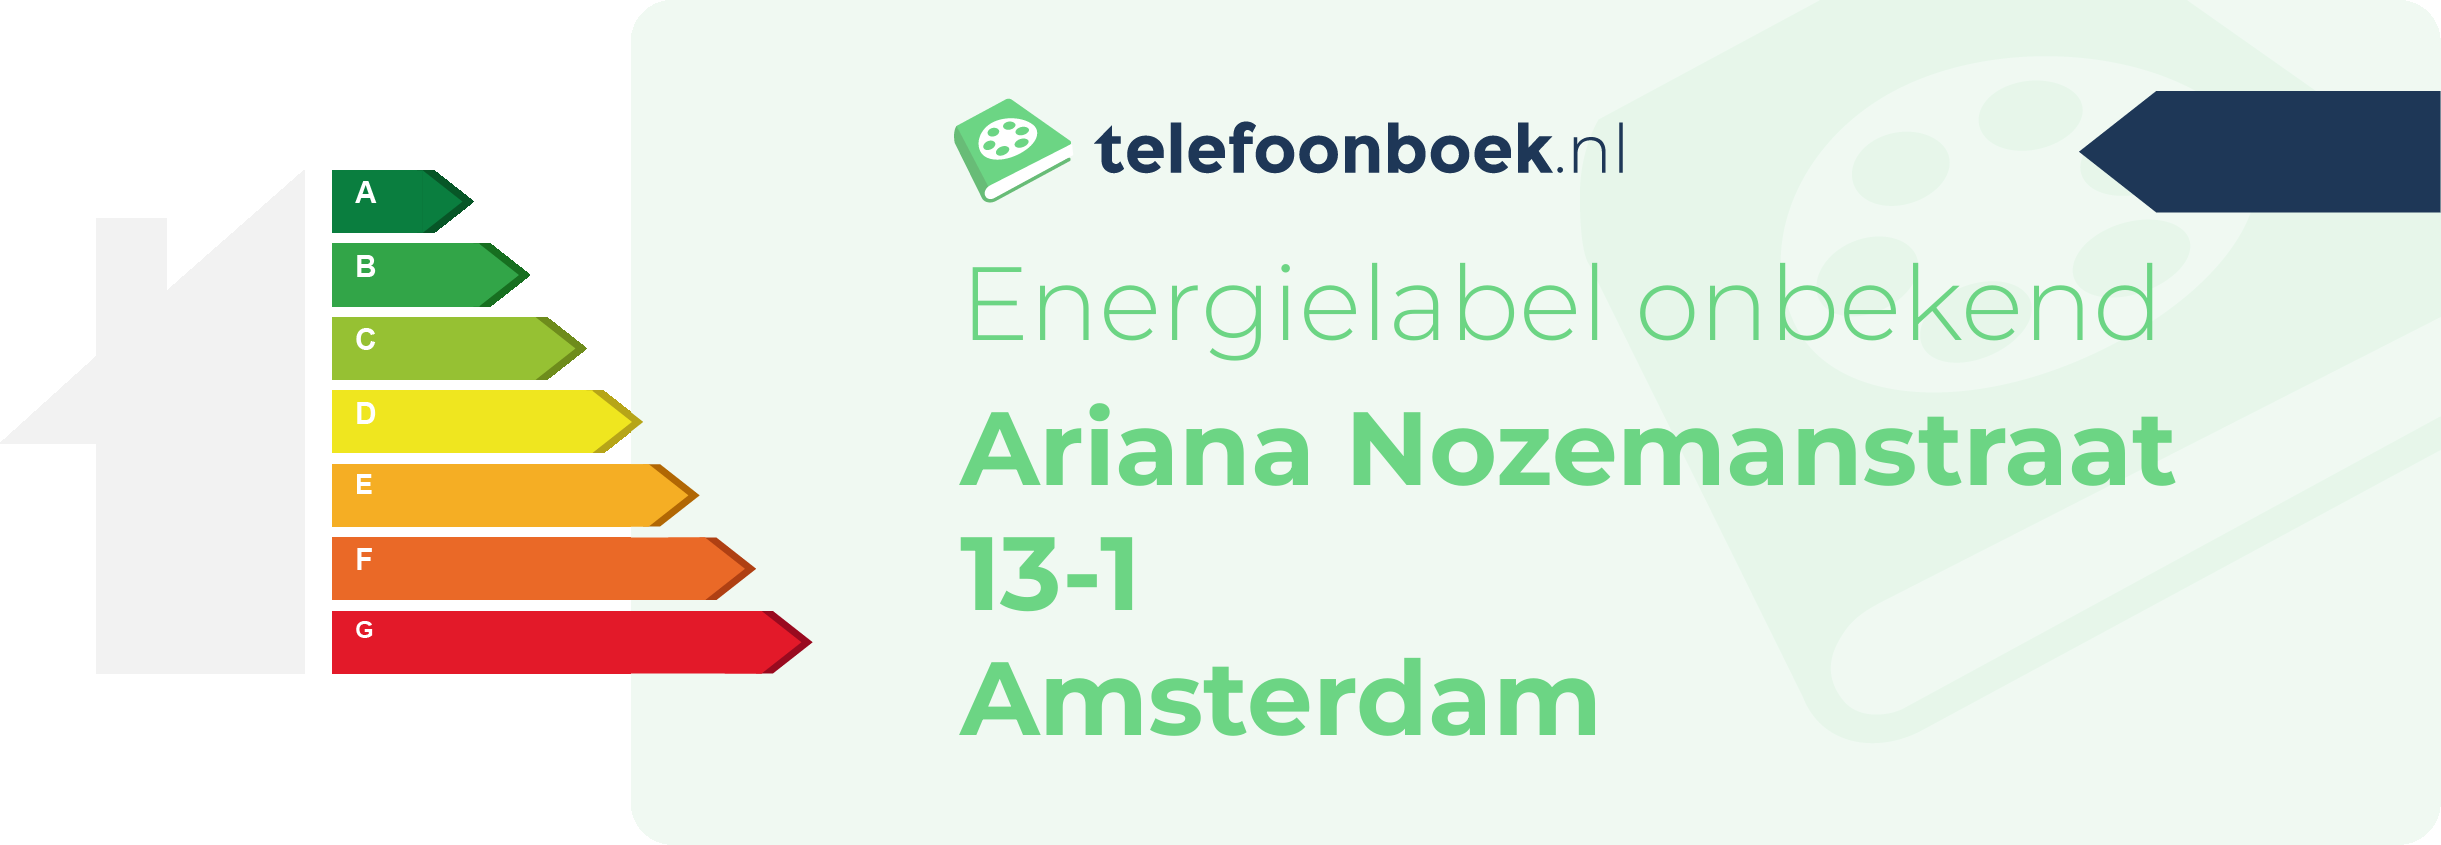 Energielabel Ariana Nozemanstraat 13-1 Amsterdam